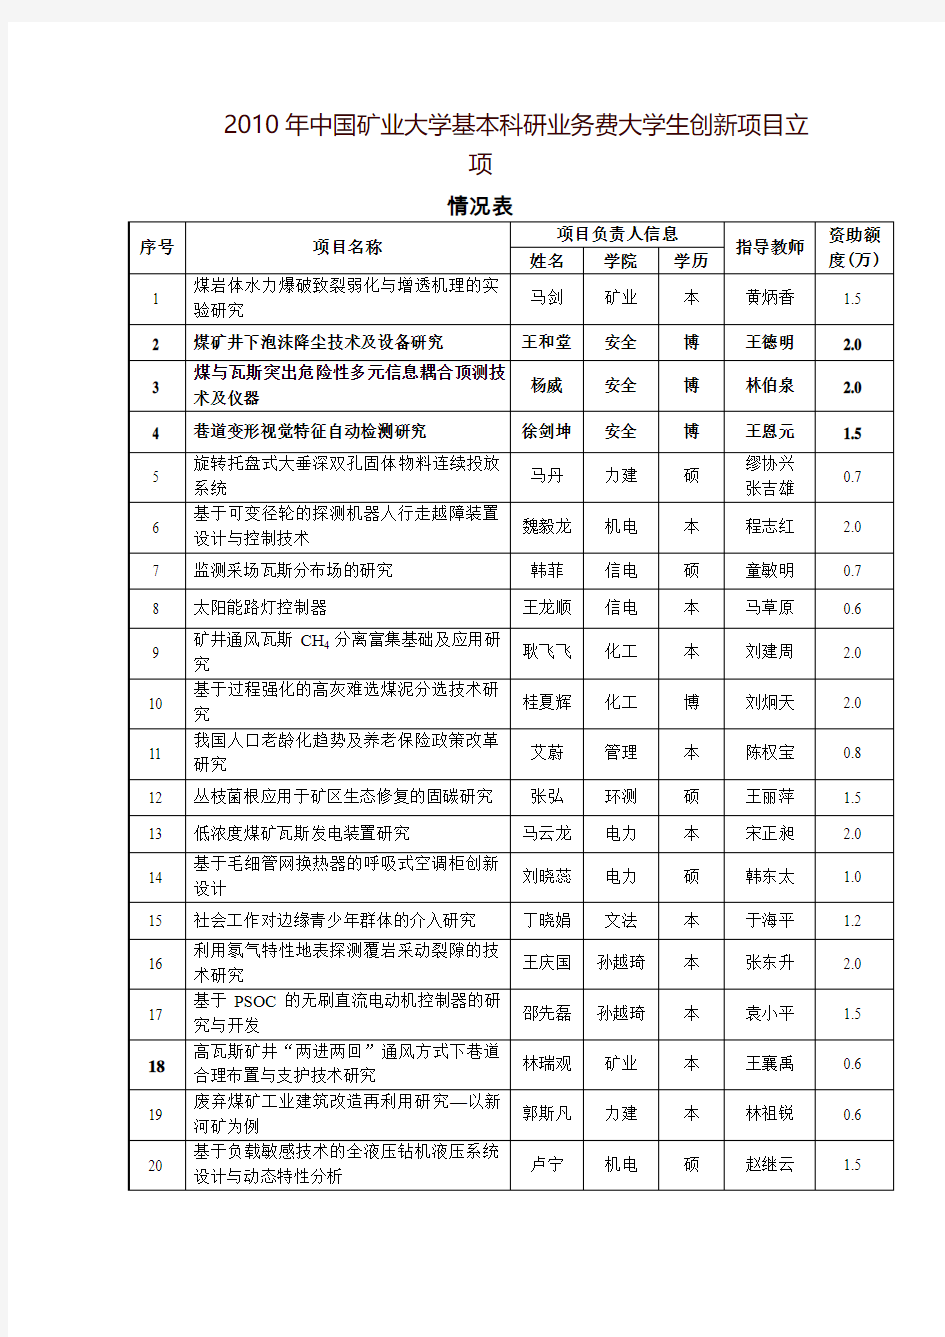 中国矿业大学发文审批表-安全工程学院